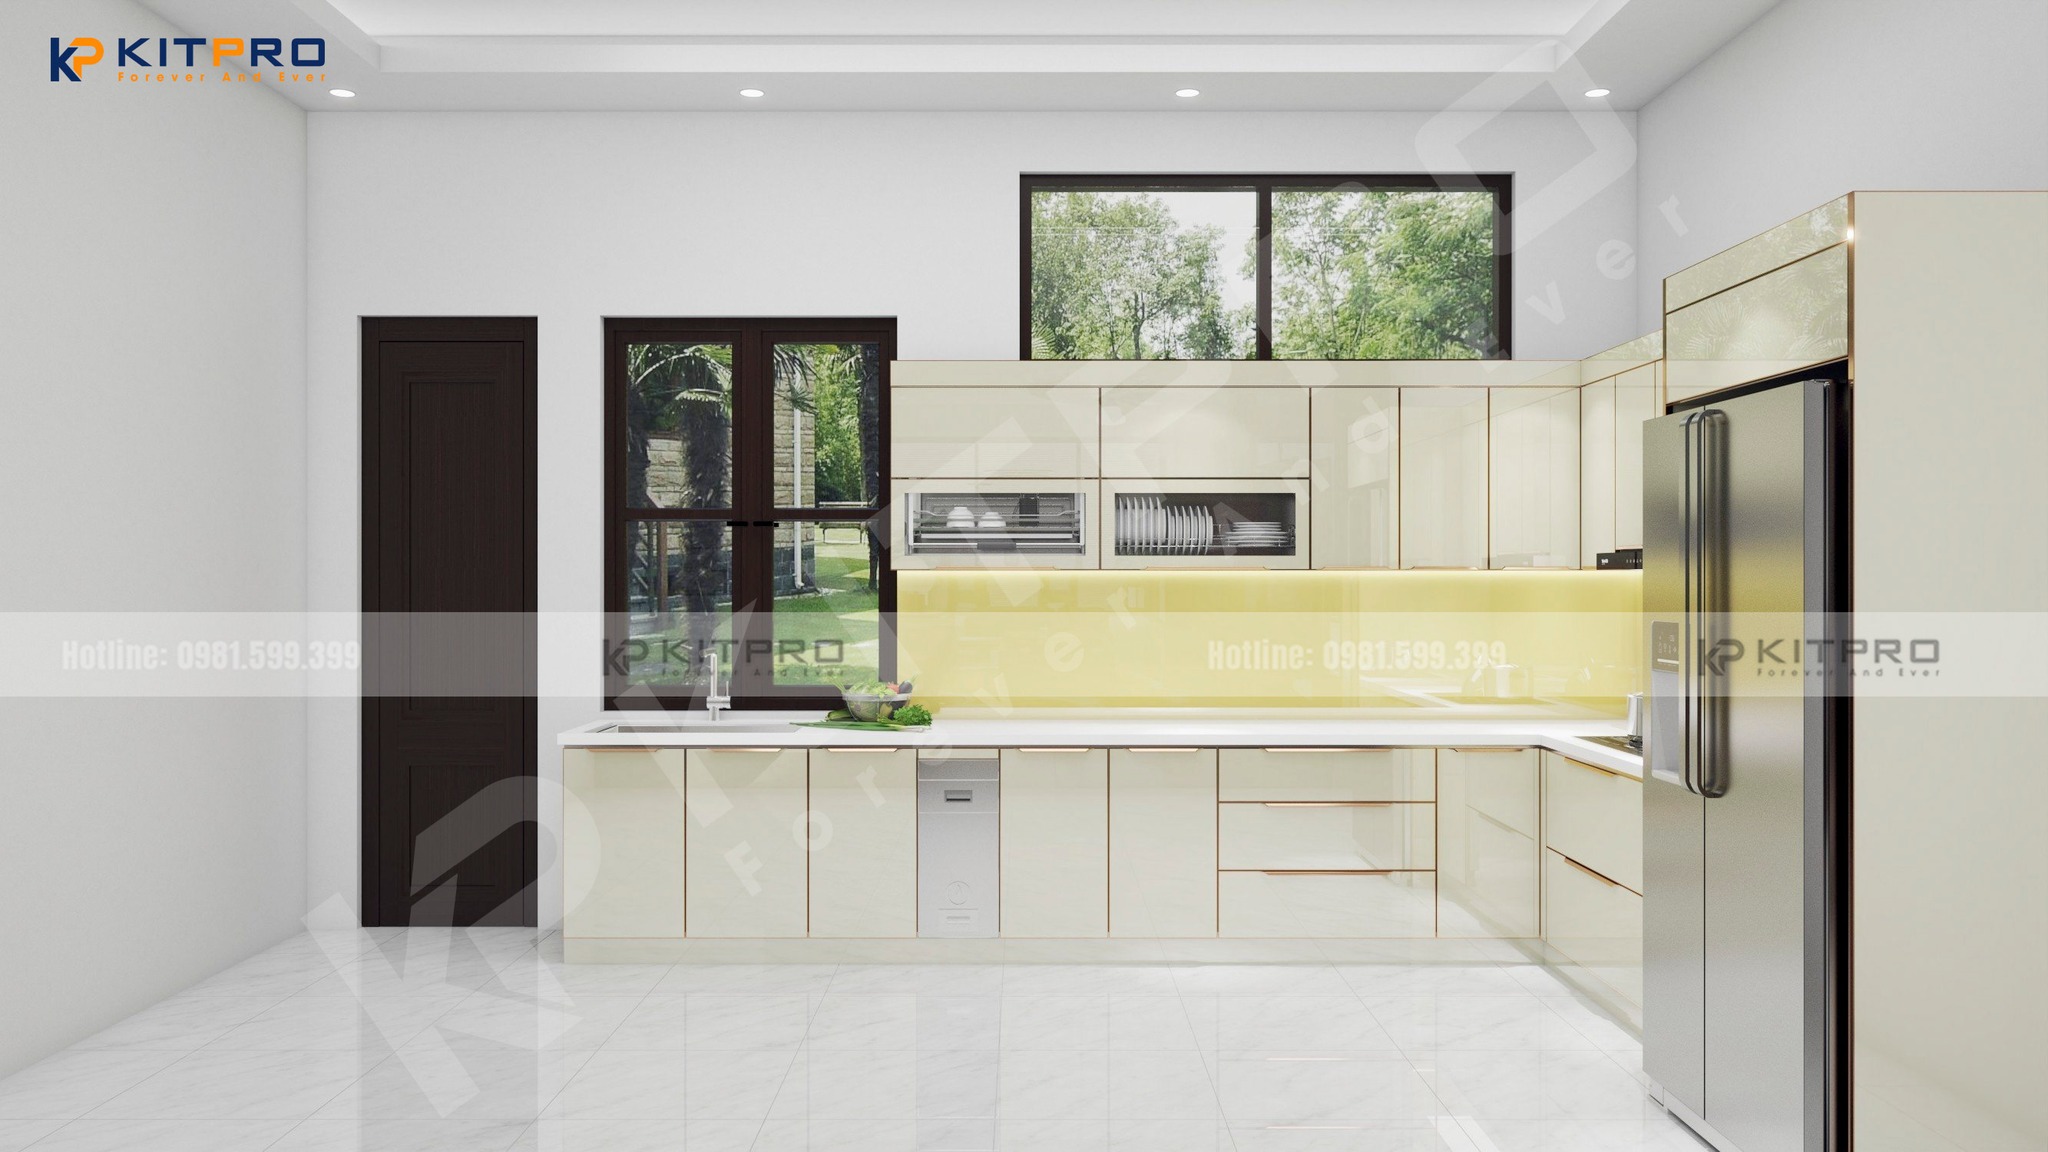 Tủ bếp màu trắng mang phong cách hiện đại đẹp tinh tế, thanh lịch